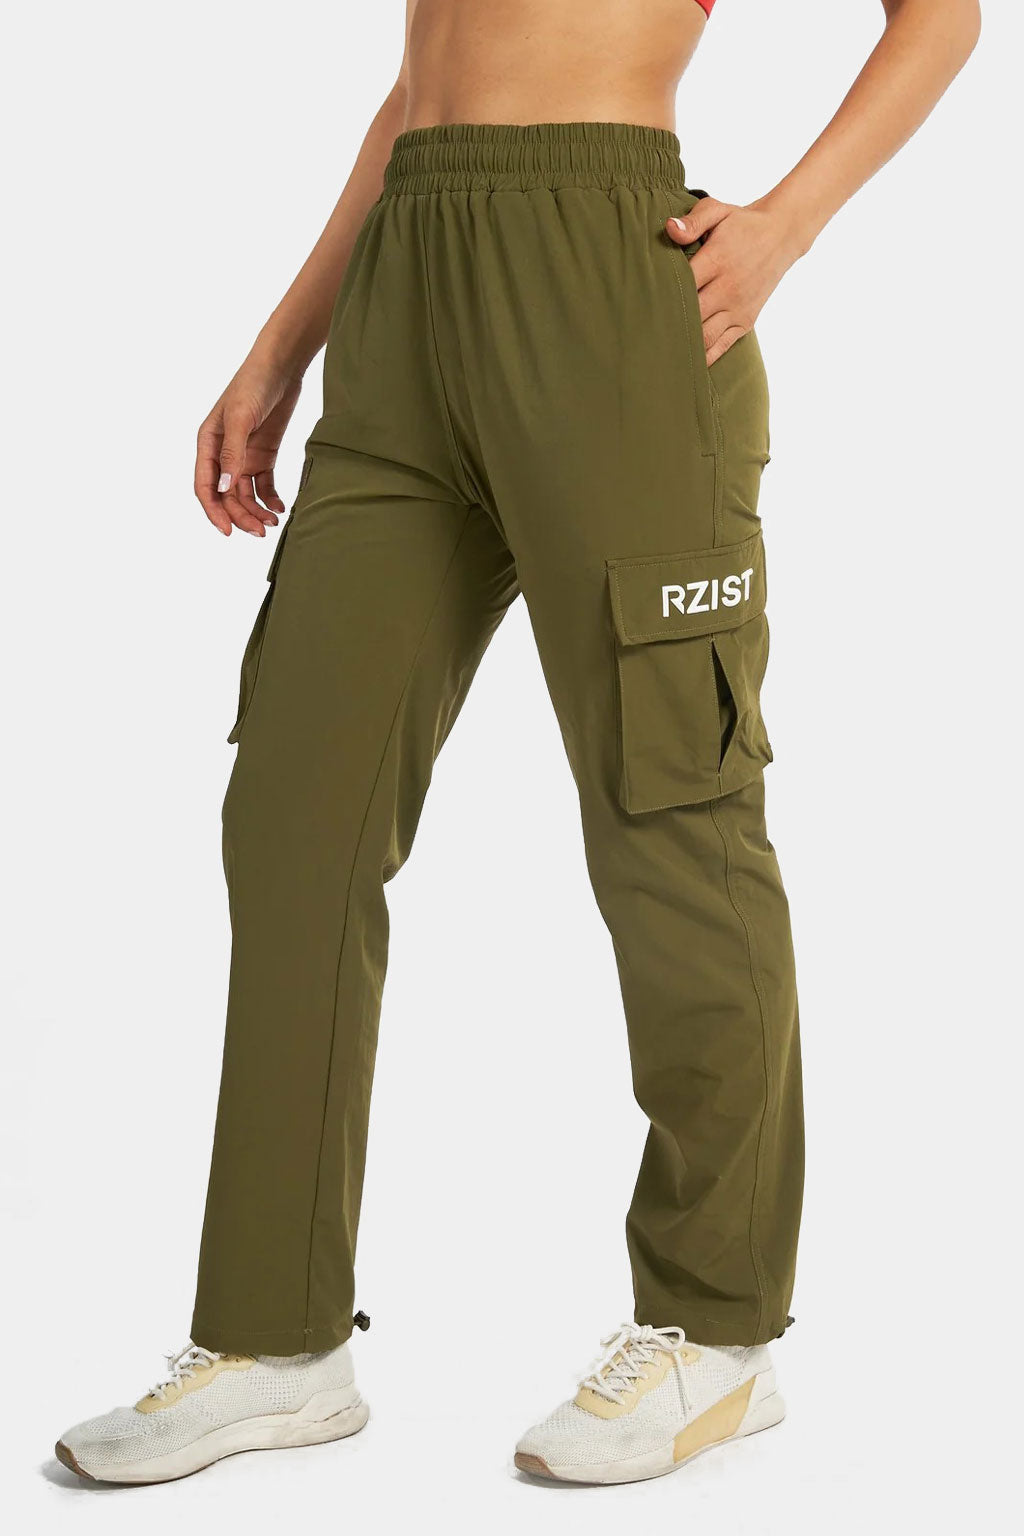 Rzist - Women's Active Cargo Pant